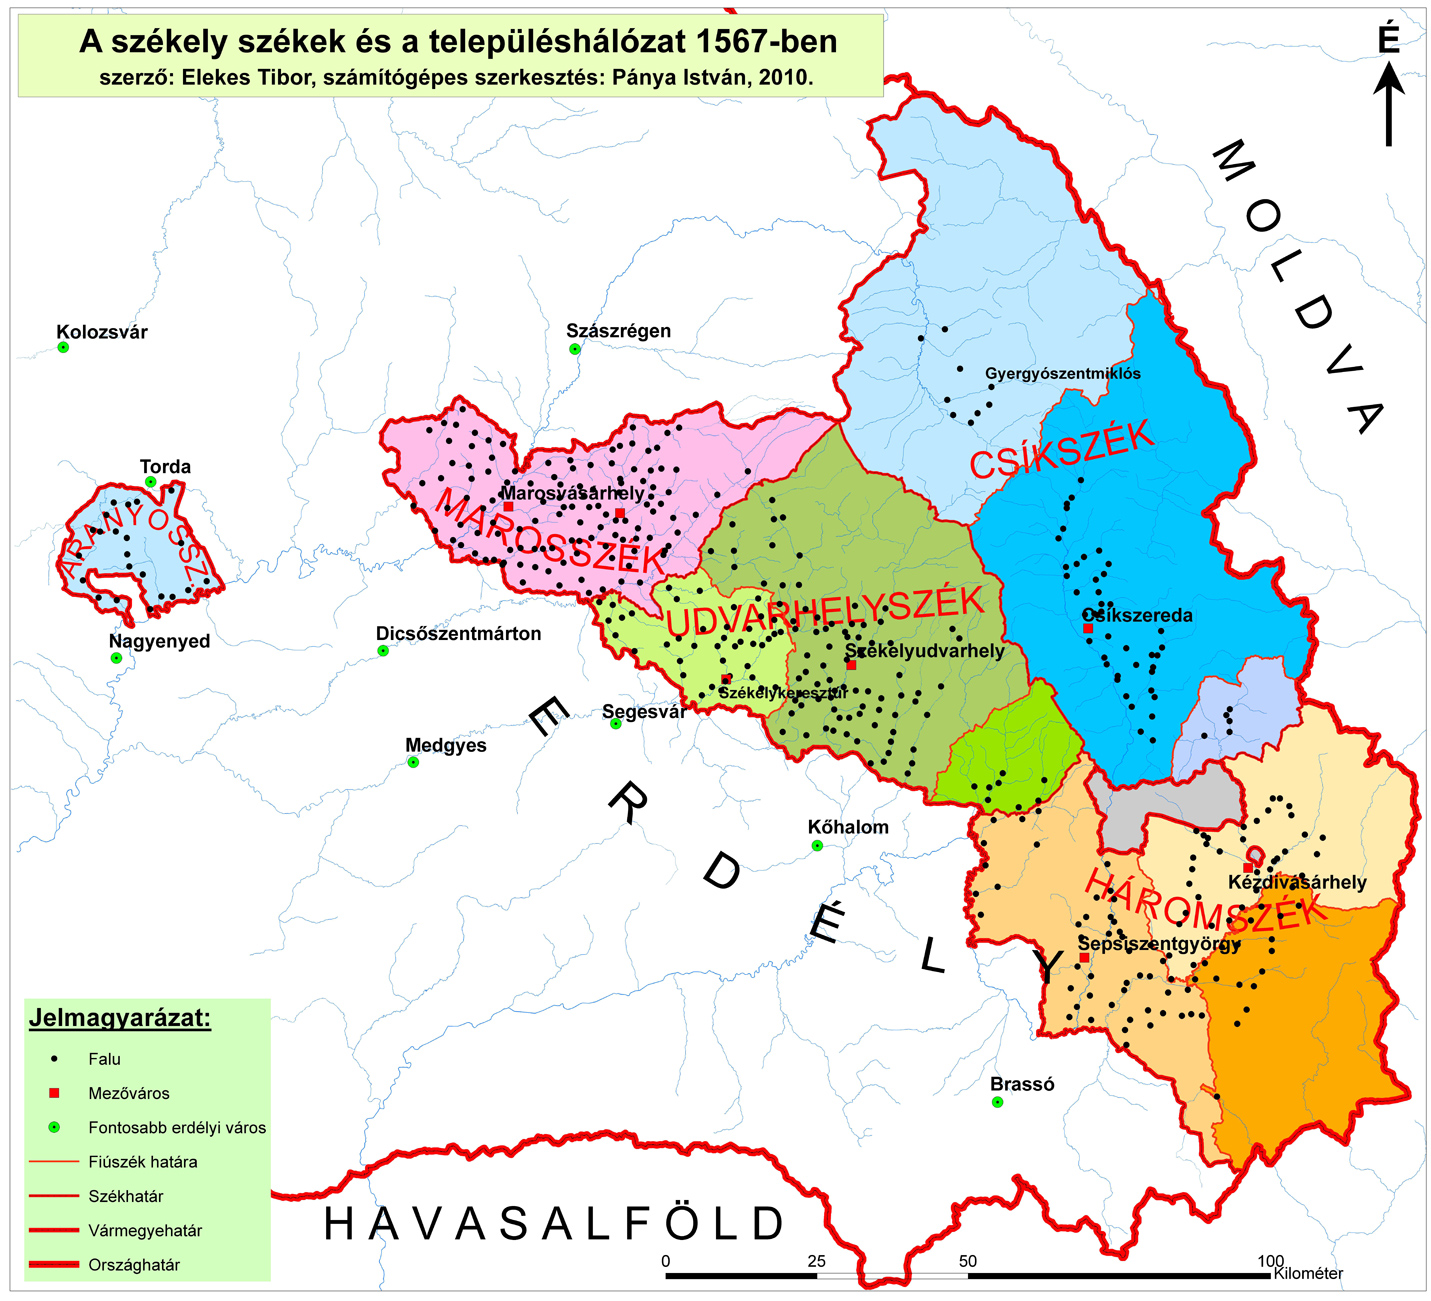 erdély térkép megyékkel Az erdélyi megyék közigazgatási határainak változása a középkortól  erdély térkép megyékkel